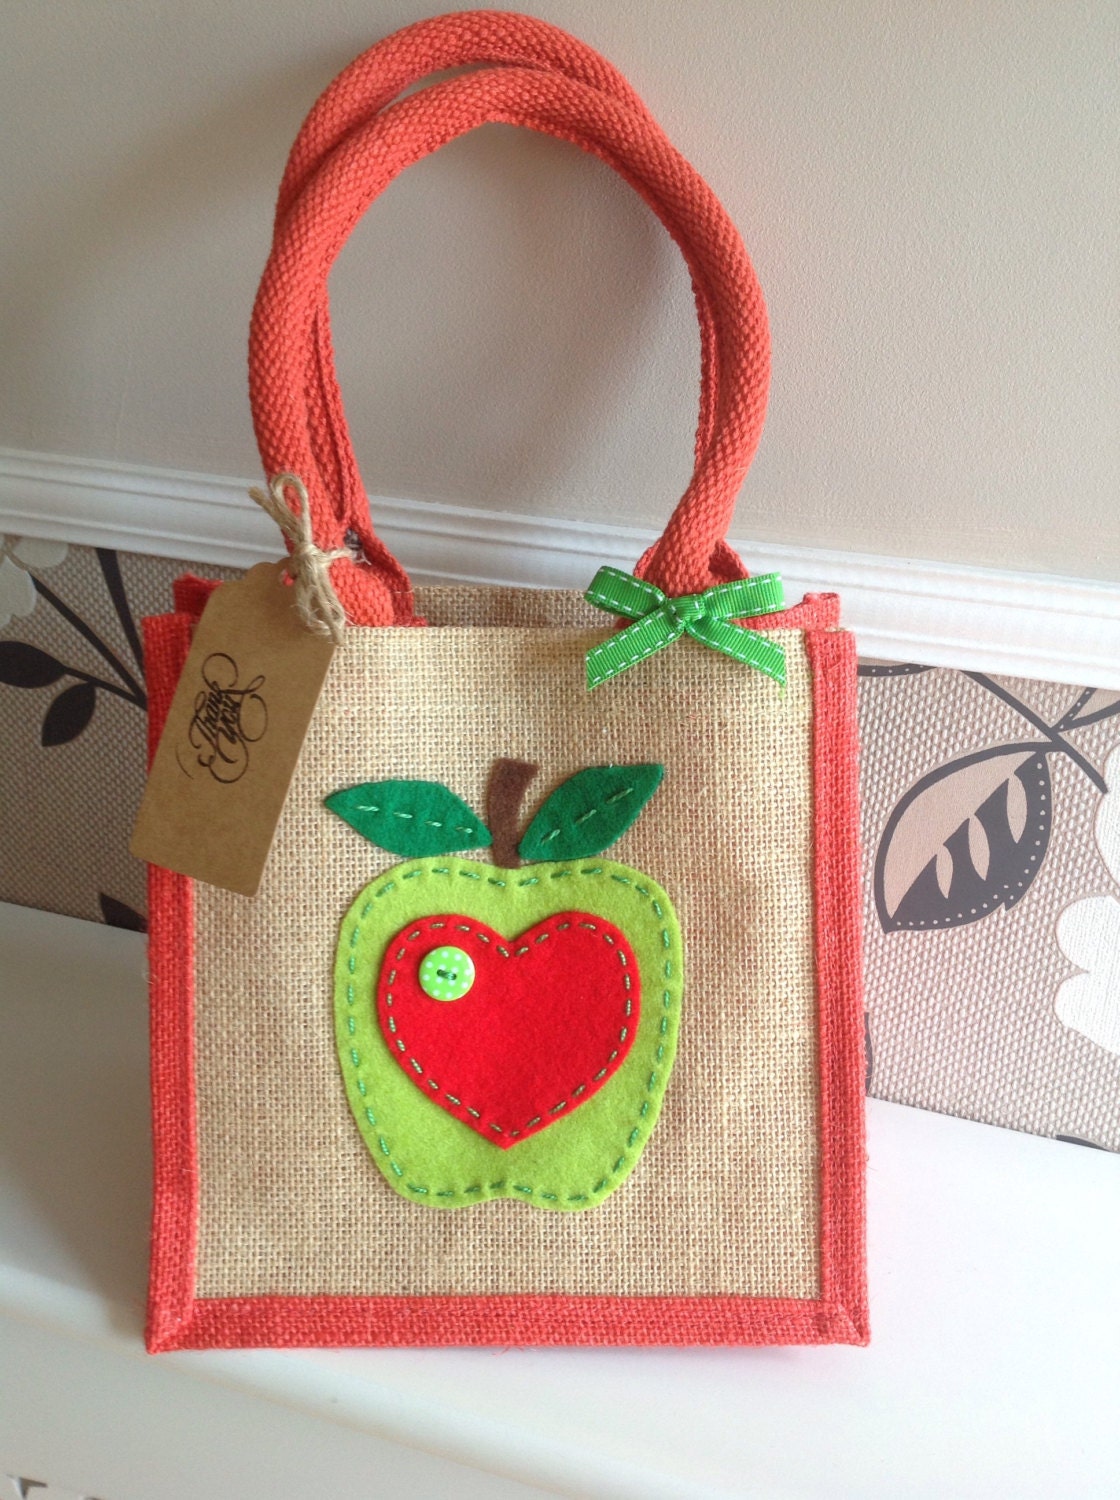 Apple gift felt motif jute bag. Lunch bag/gift bag/teacher | Etsy